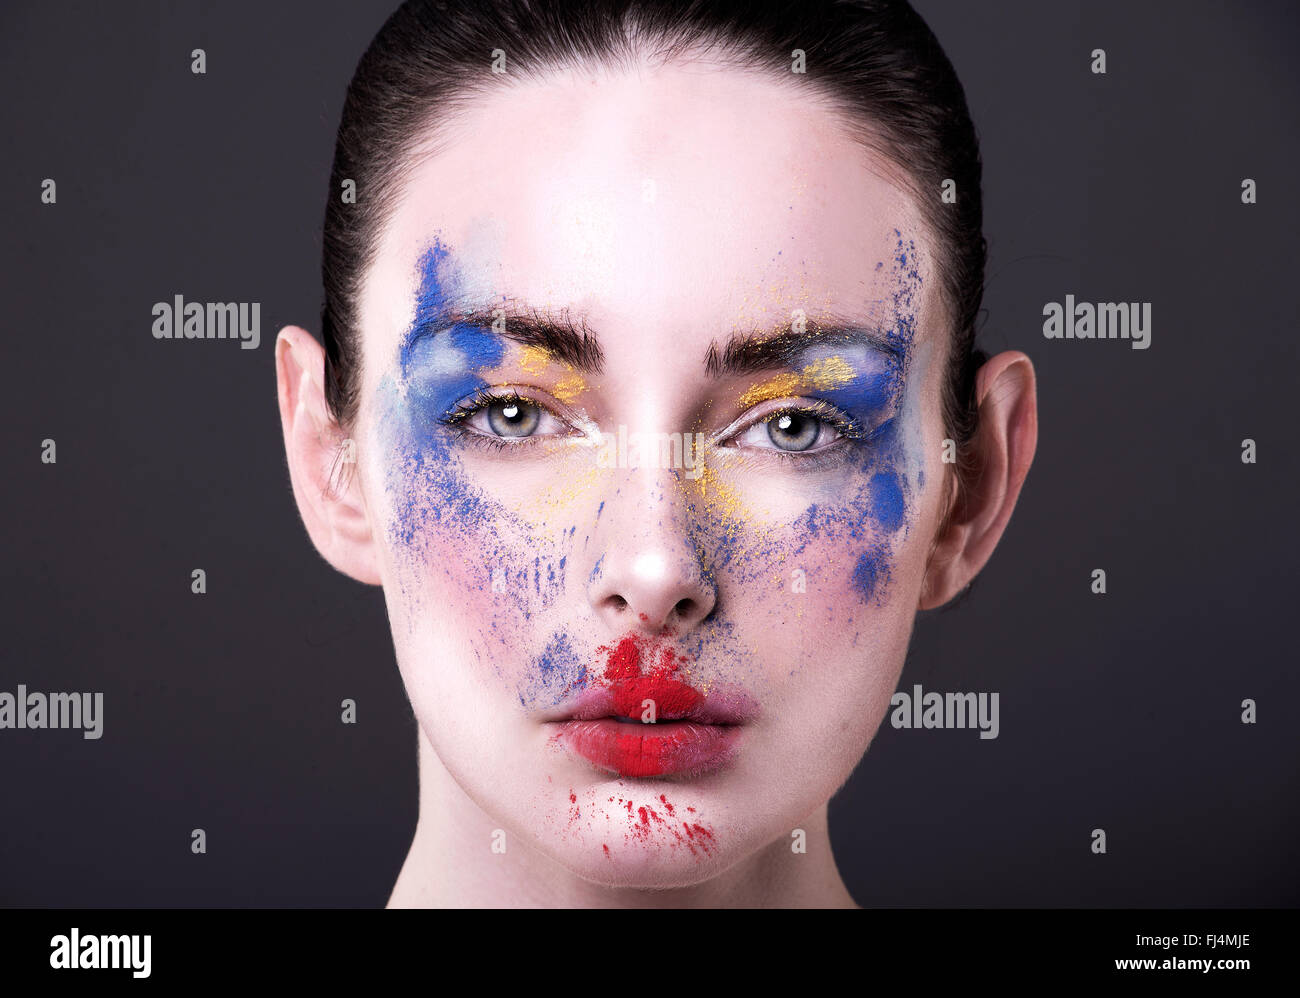 Hübsches Modell mit Puder Make-up in Primärfarben Blick direkt in die Kamera. Rot, blau und gelb Pulver auf frisches Gesicht Stockfoto